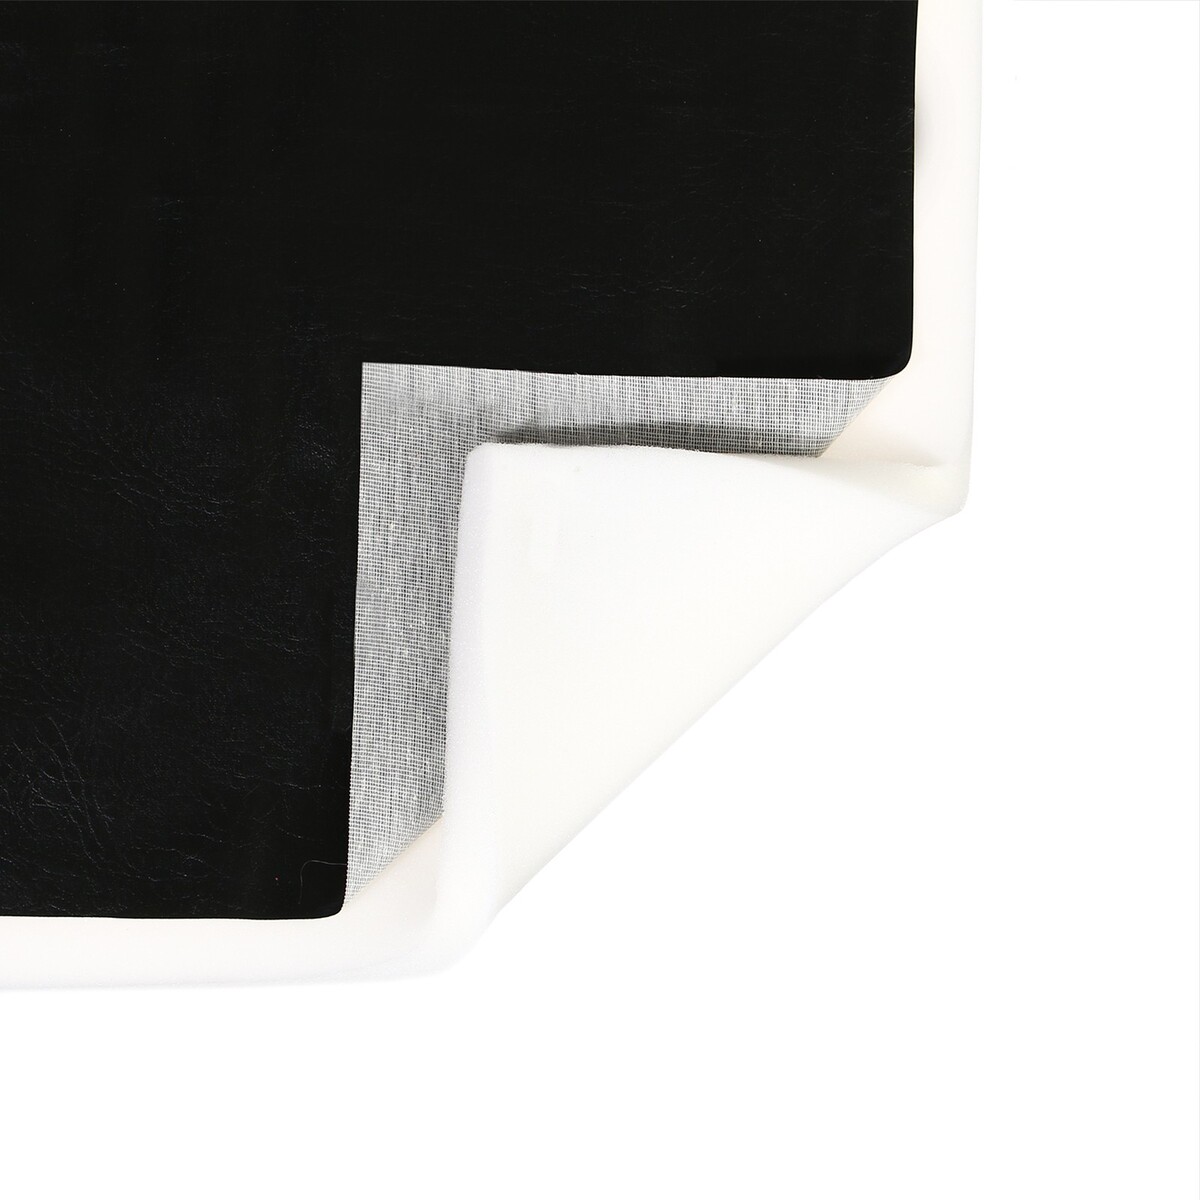 Комплект для перетяжки мебели, 100 × 150 см: иск.кожа, поролон 20 мм, черный комплект для перетяжки мебели 50 × 50 см иск кожа поролон 20 мм чёрный